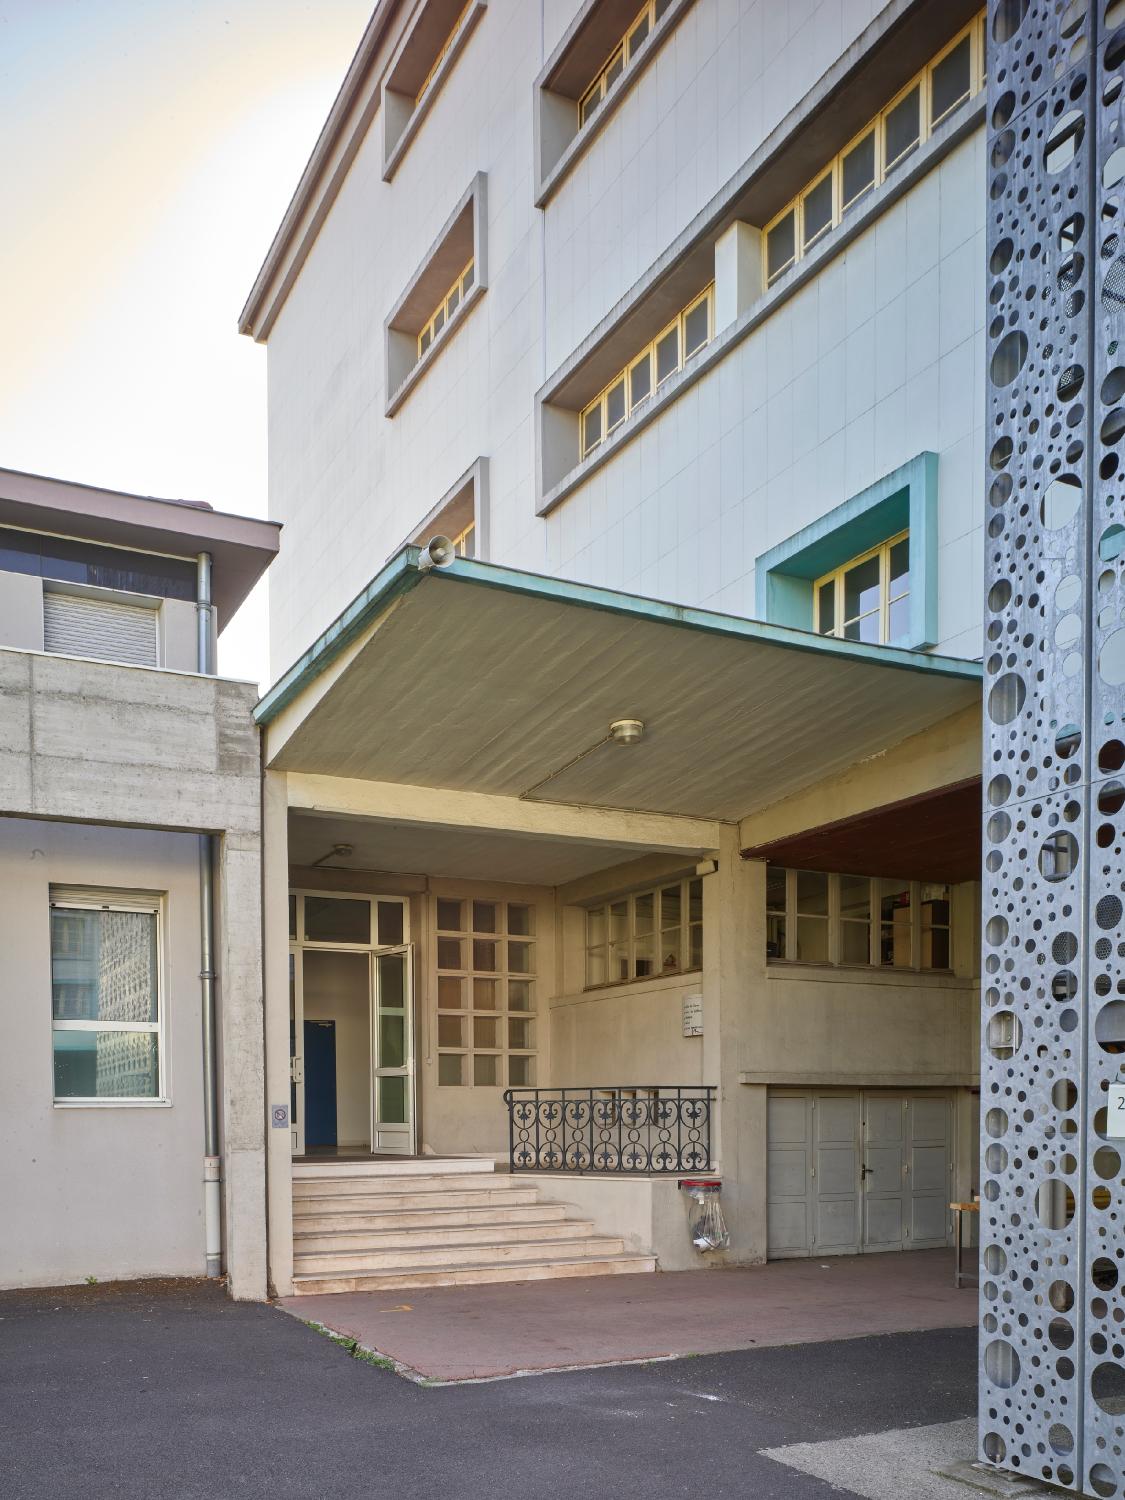 Centre d'apprentissage féminin de Montferrand, puis CET (collège d'enseignement technique) de jeunes filles, actuellement lycée professionnel de Montferrand dit lycée professionnel Marie-Curie